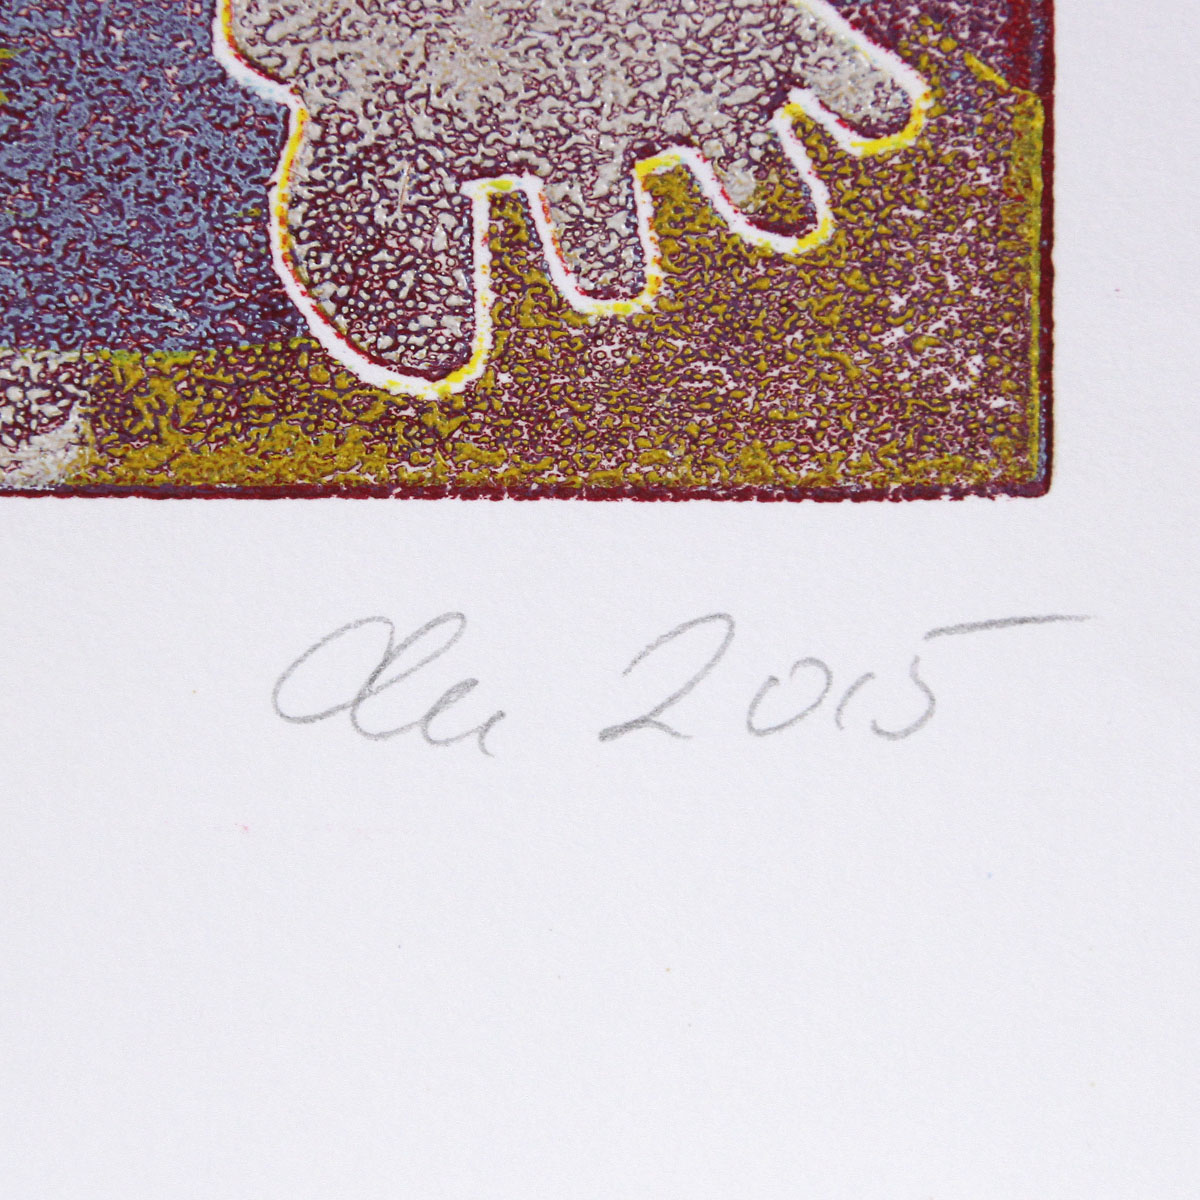 Grafik, mehrfarbiger Linoldruck von Frank-Ole Haake: "Paar 12 (20)"